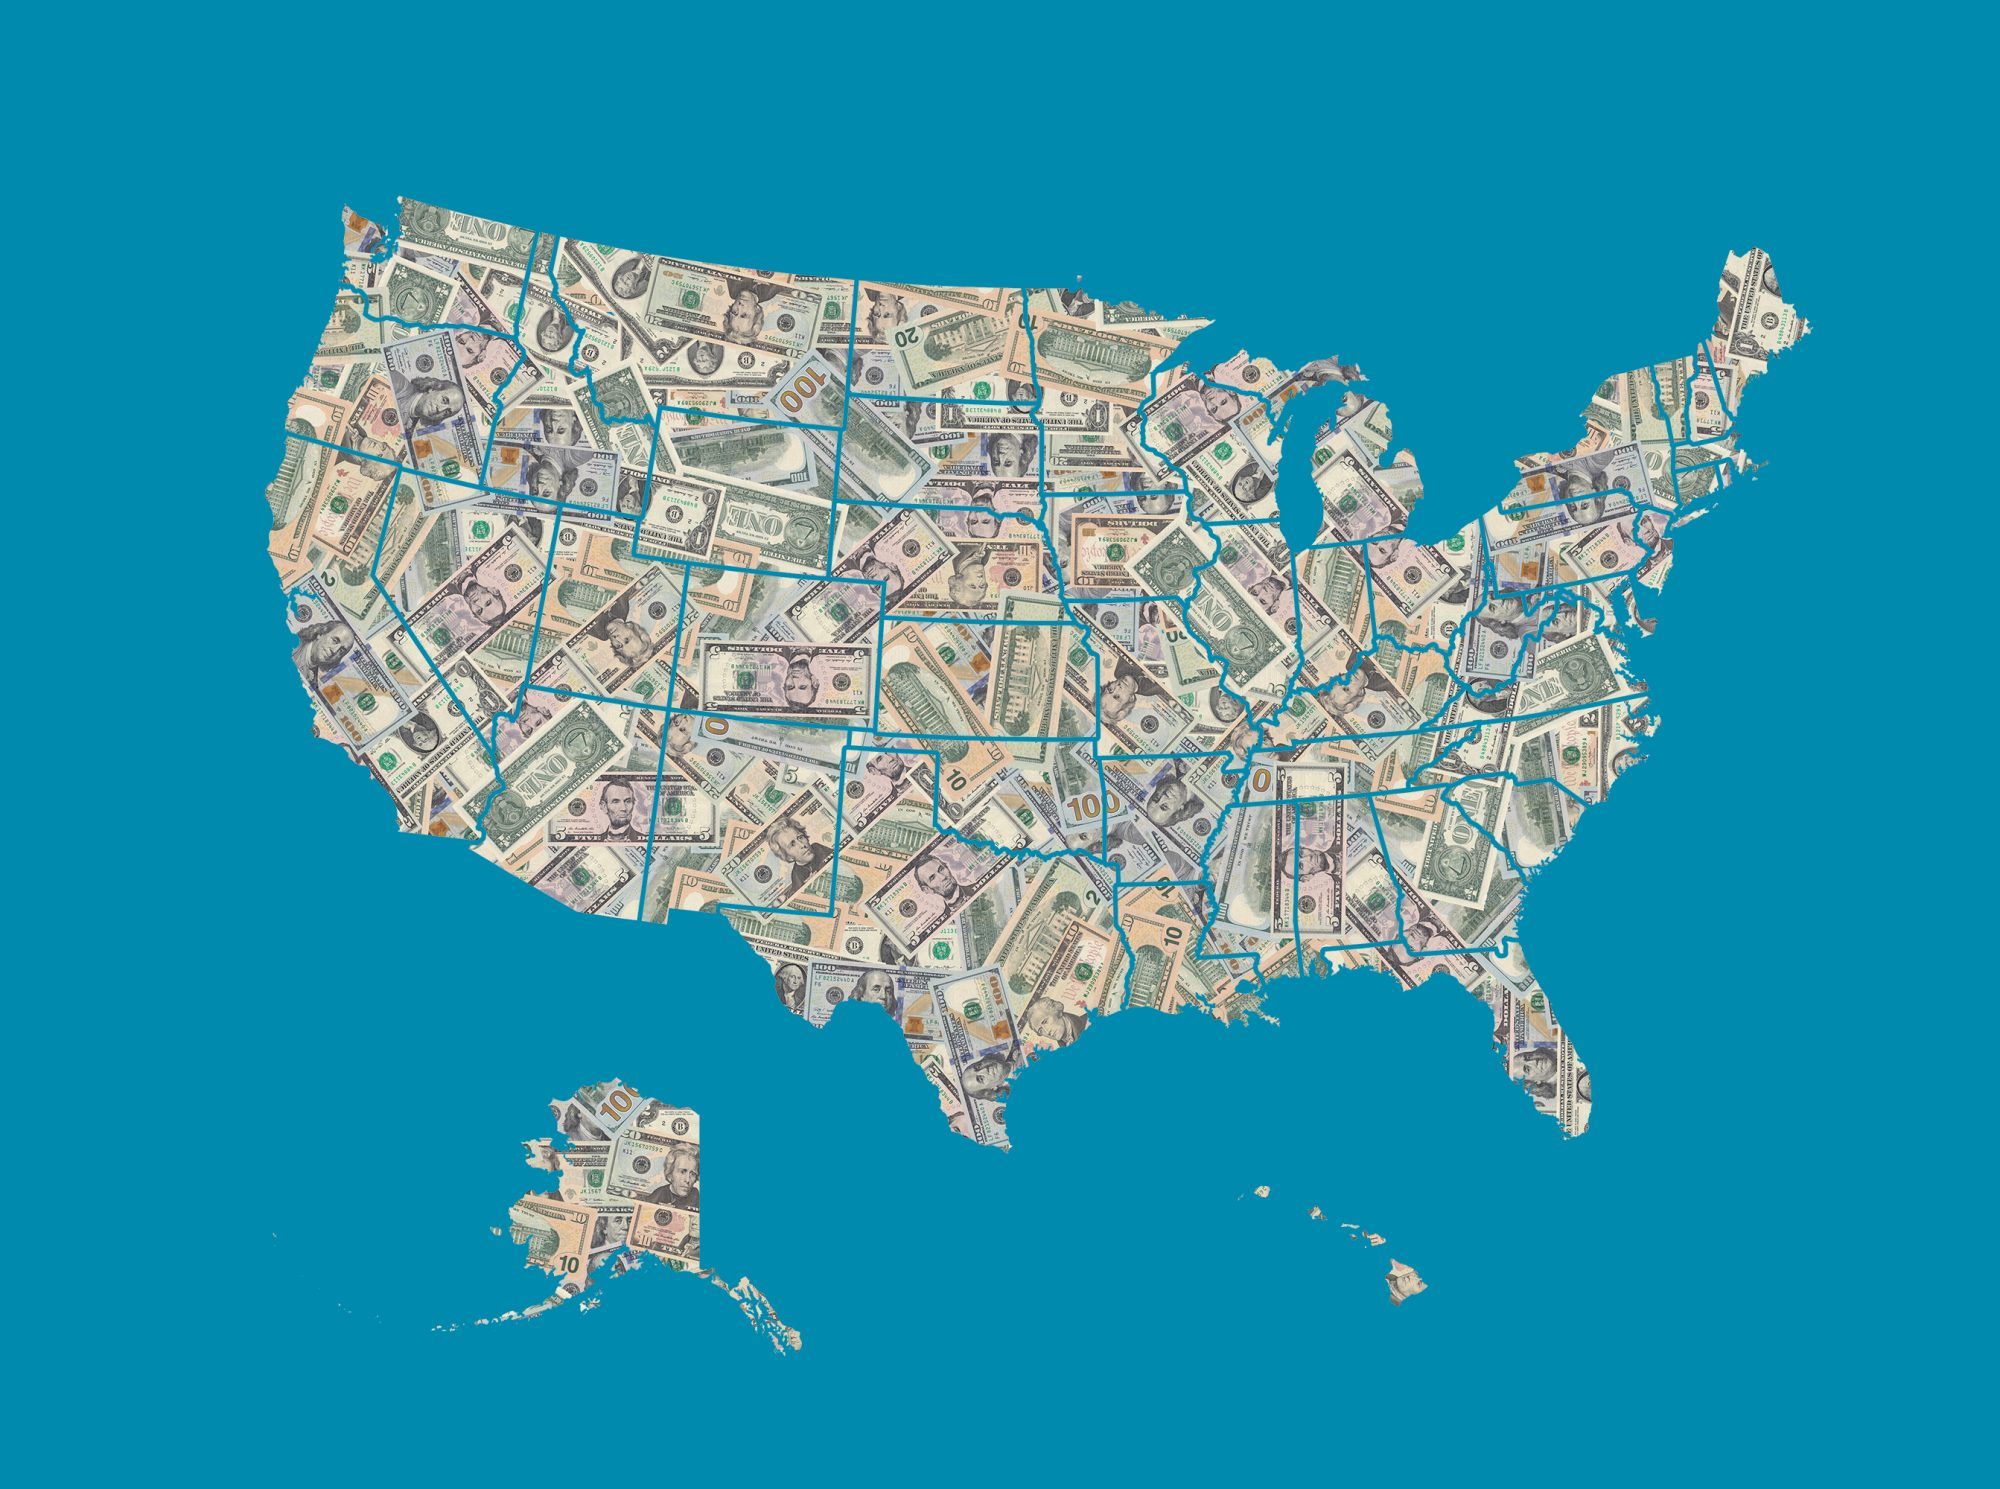 Zemljevid Združenih držav Amerike, oblikovan z bankovci v ameriških dolarjih